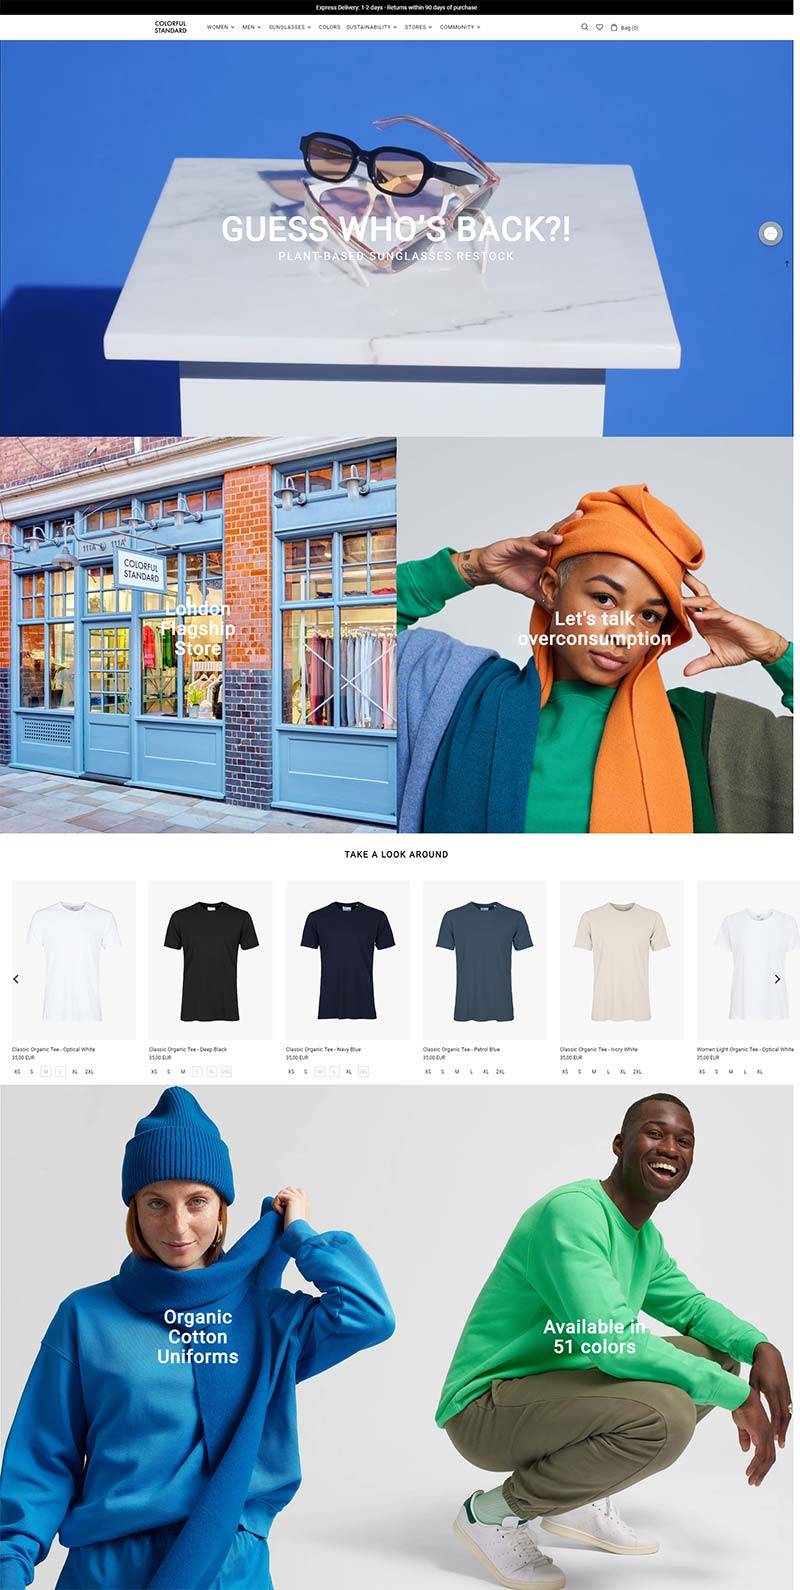 Colorful Standard 丹麦简约休闲服饰品牌购物网站